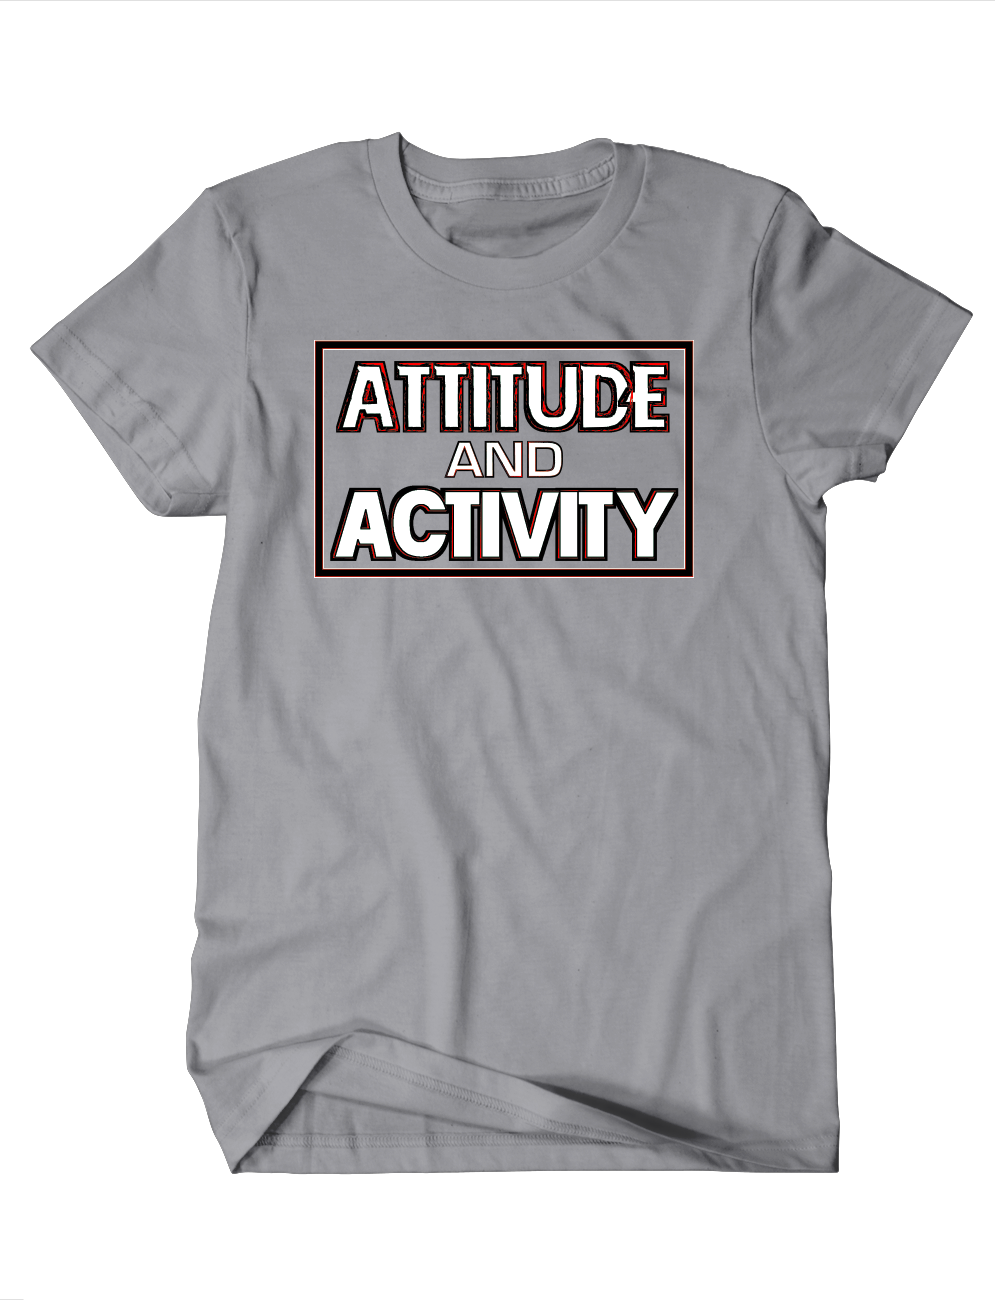 Attitude & Activity Tee: Gray